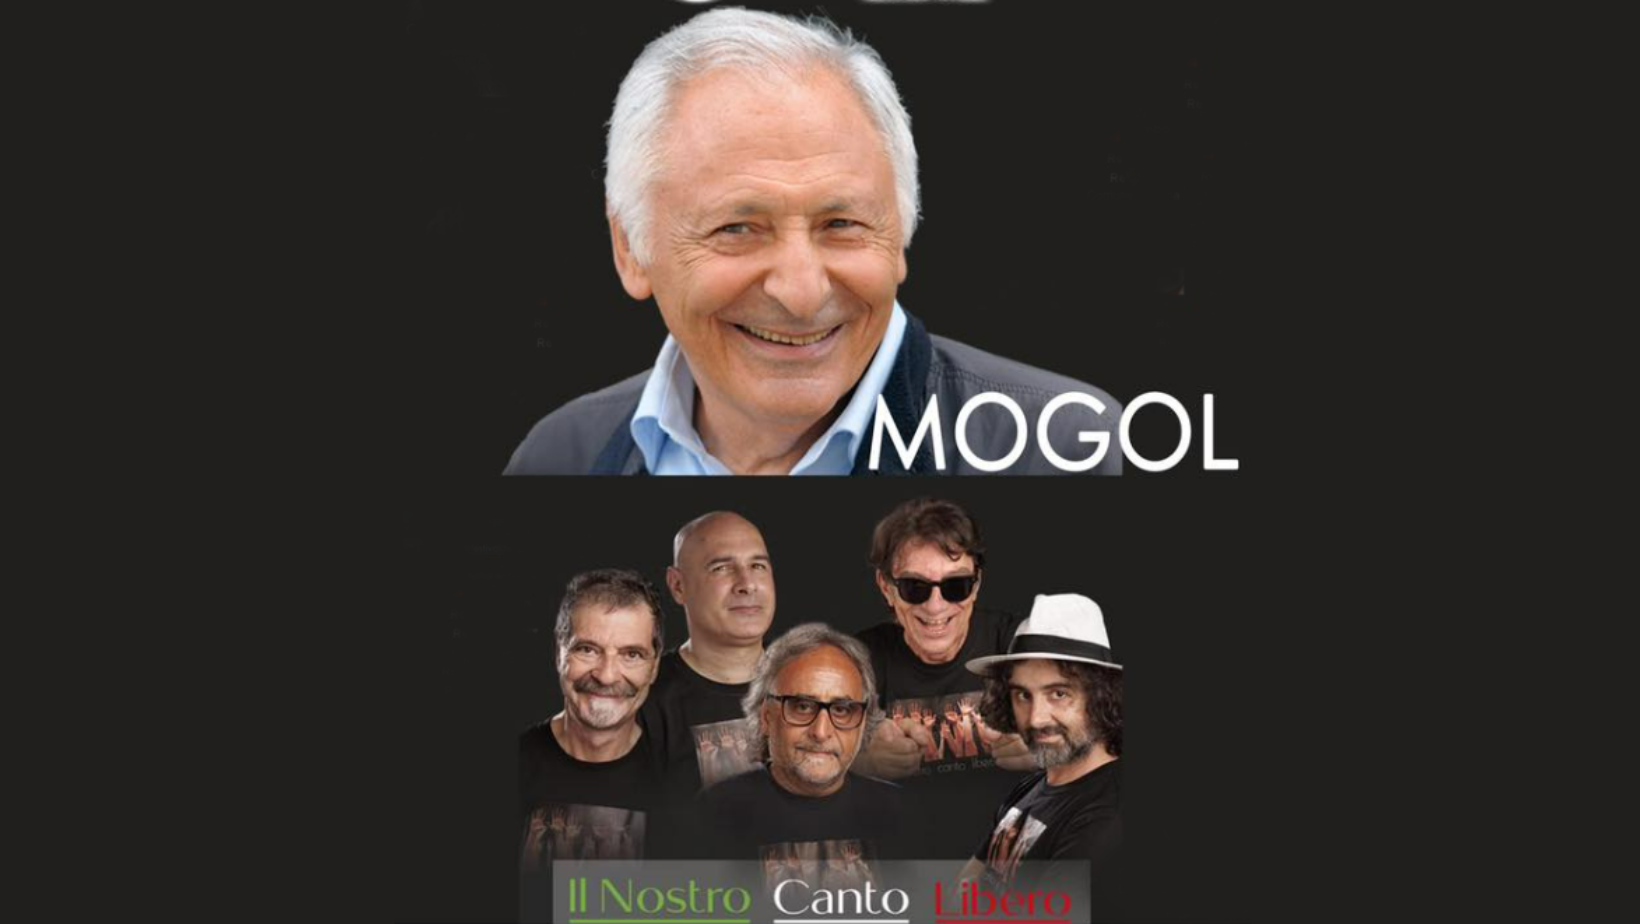 Festival del Carmine: anche Mogol per “Il nostro canto libero”